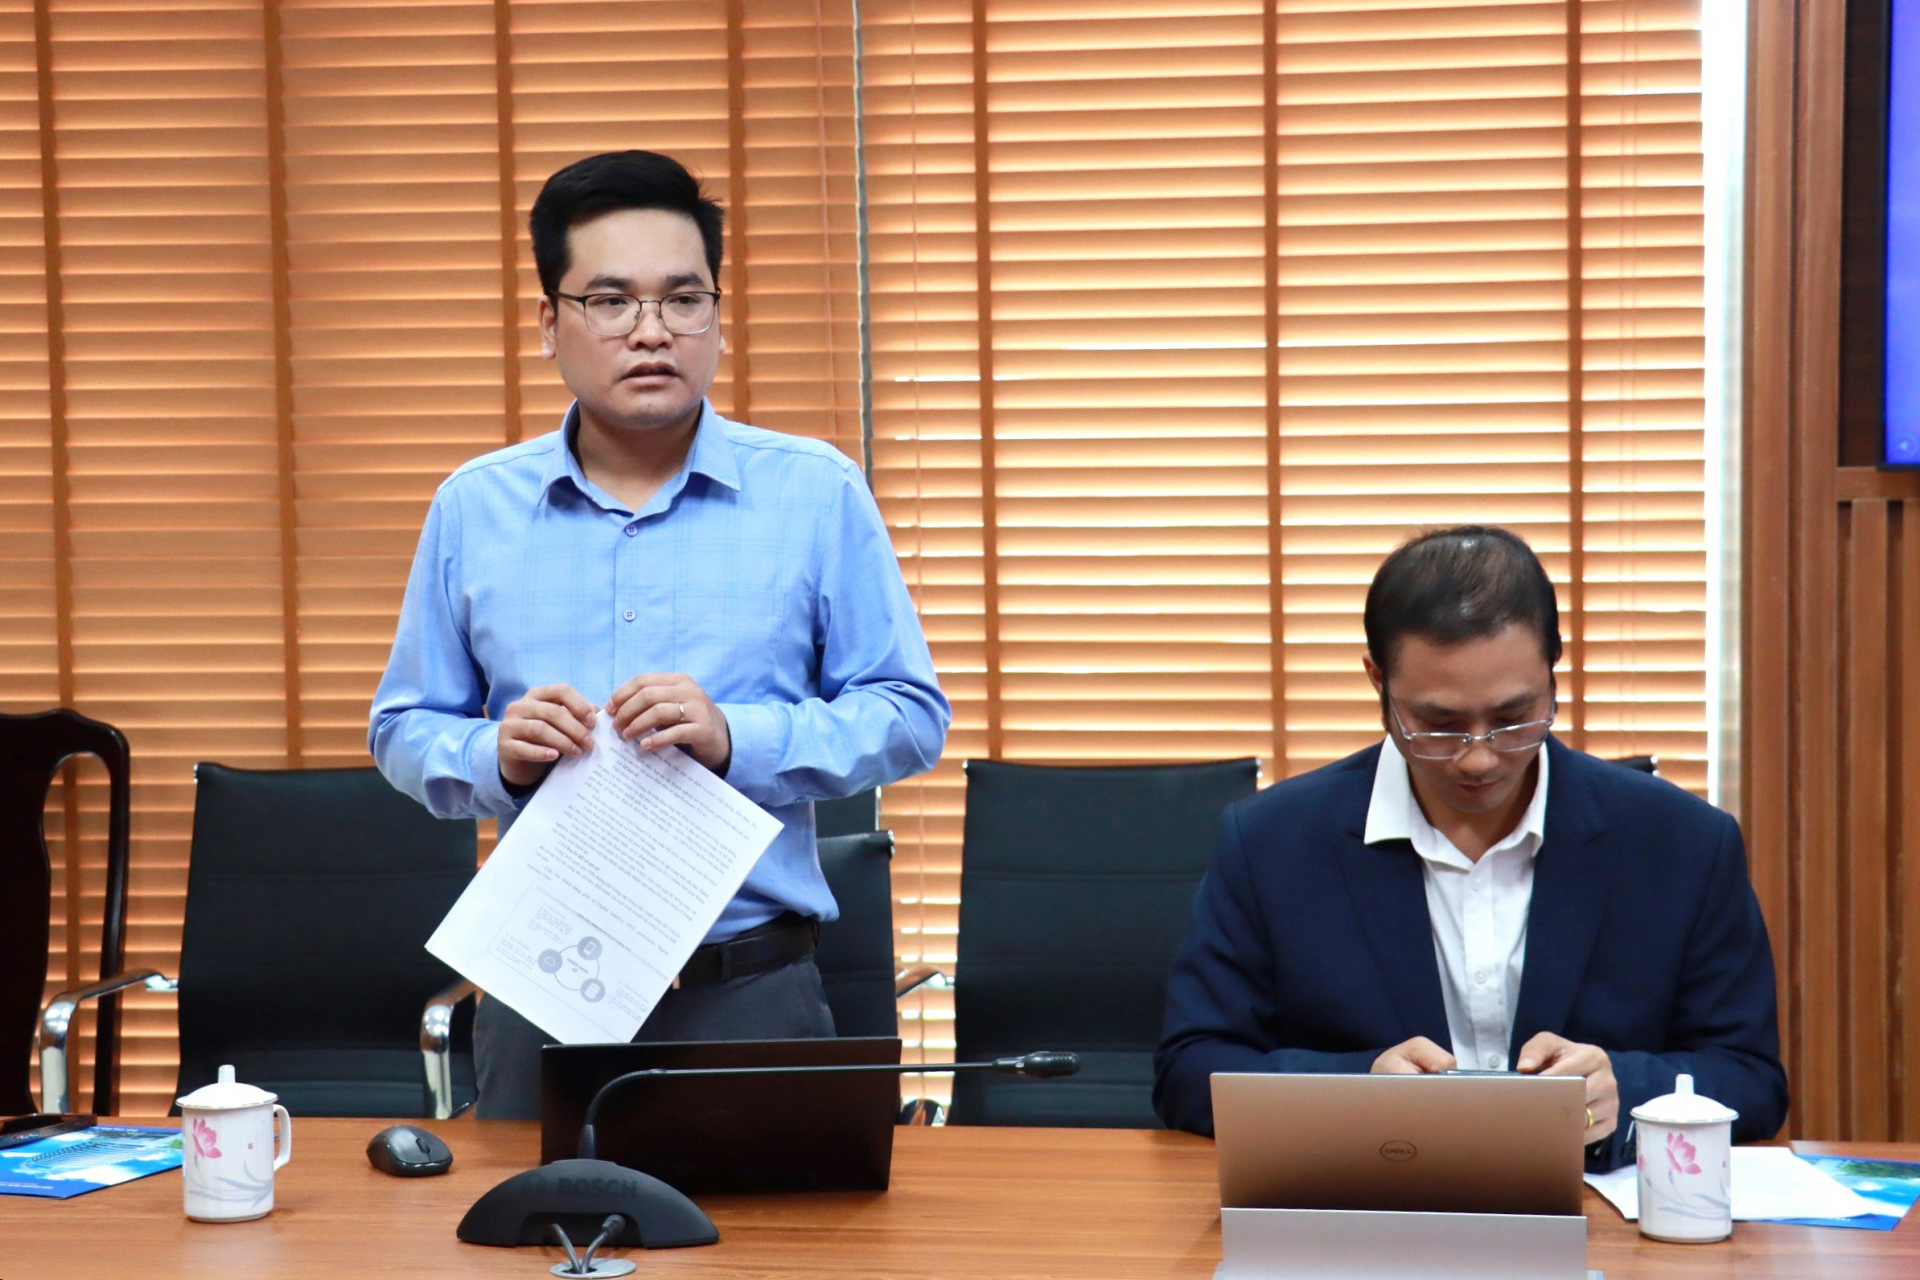 Lãnh đạo VNPT Hà Giang báo cáo kết quả sản xuất kinh doanh và chuyển đổi số của doanh nghiệp với Đoàn giám sát Ủy ban Khoa học, Công nghệ và Môi trường của Quốc hội.